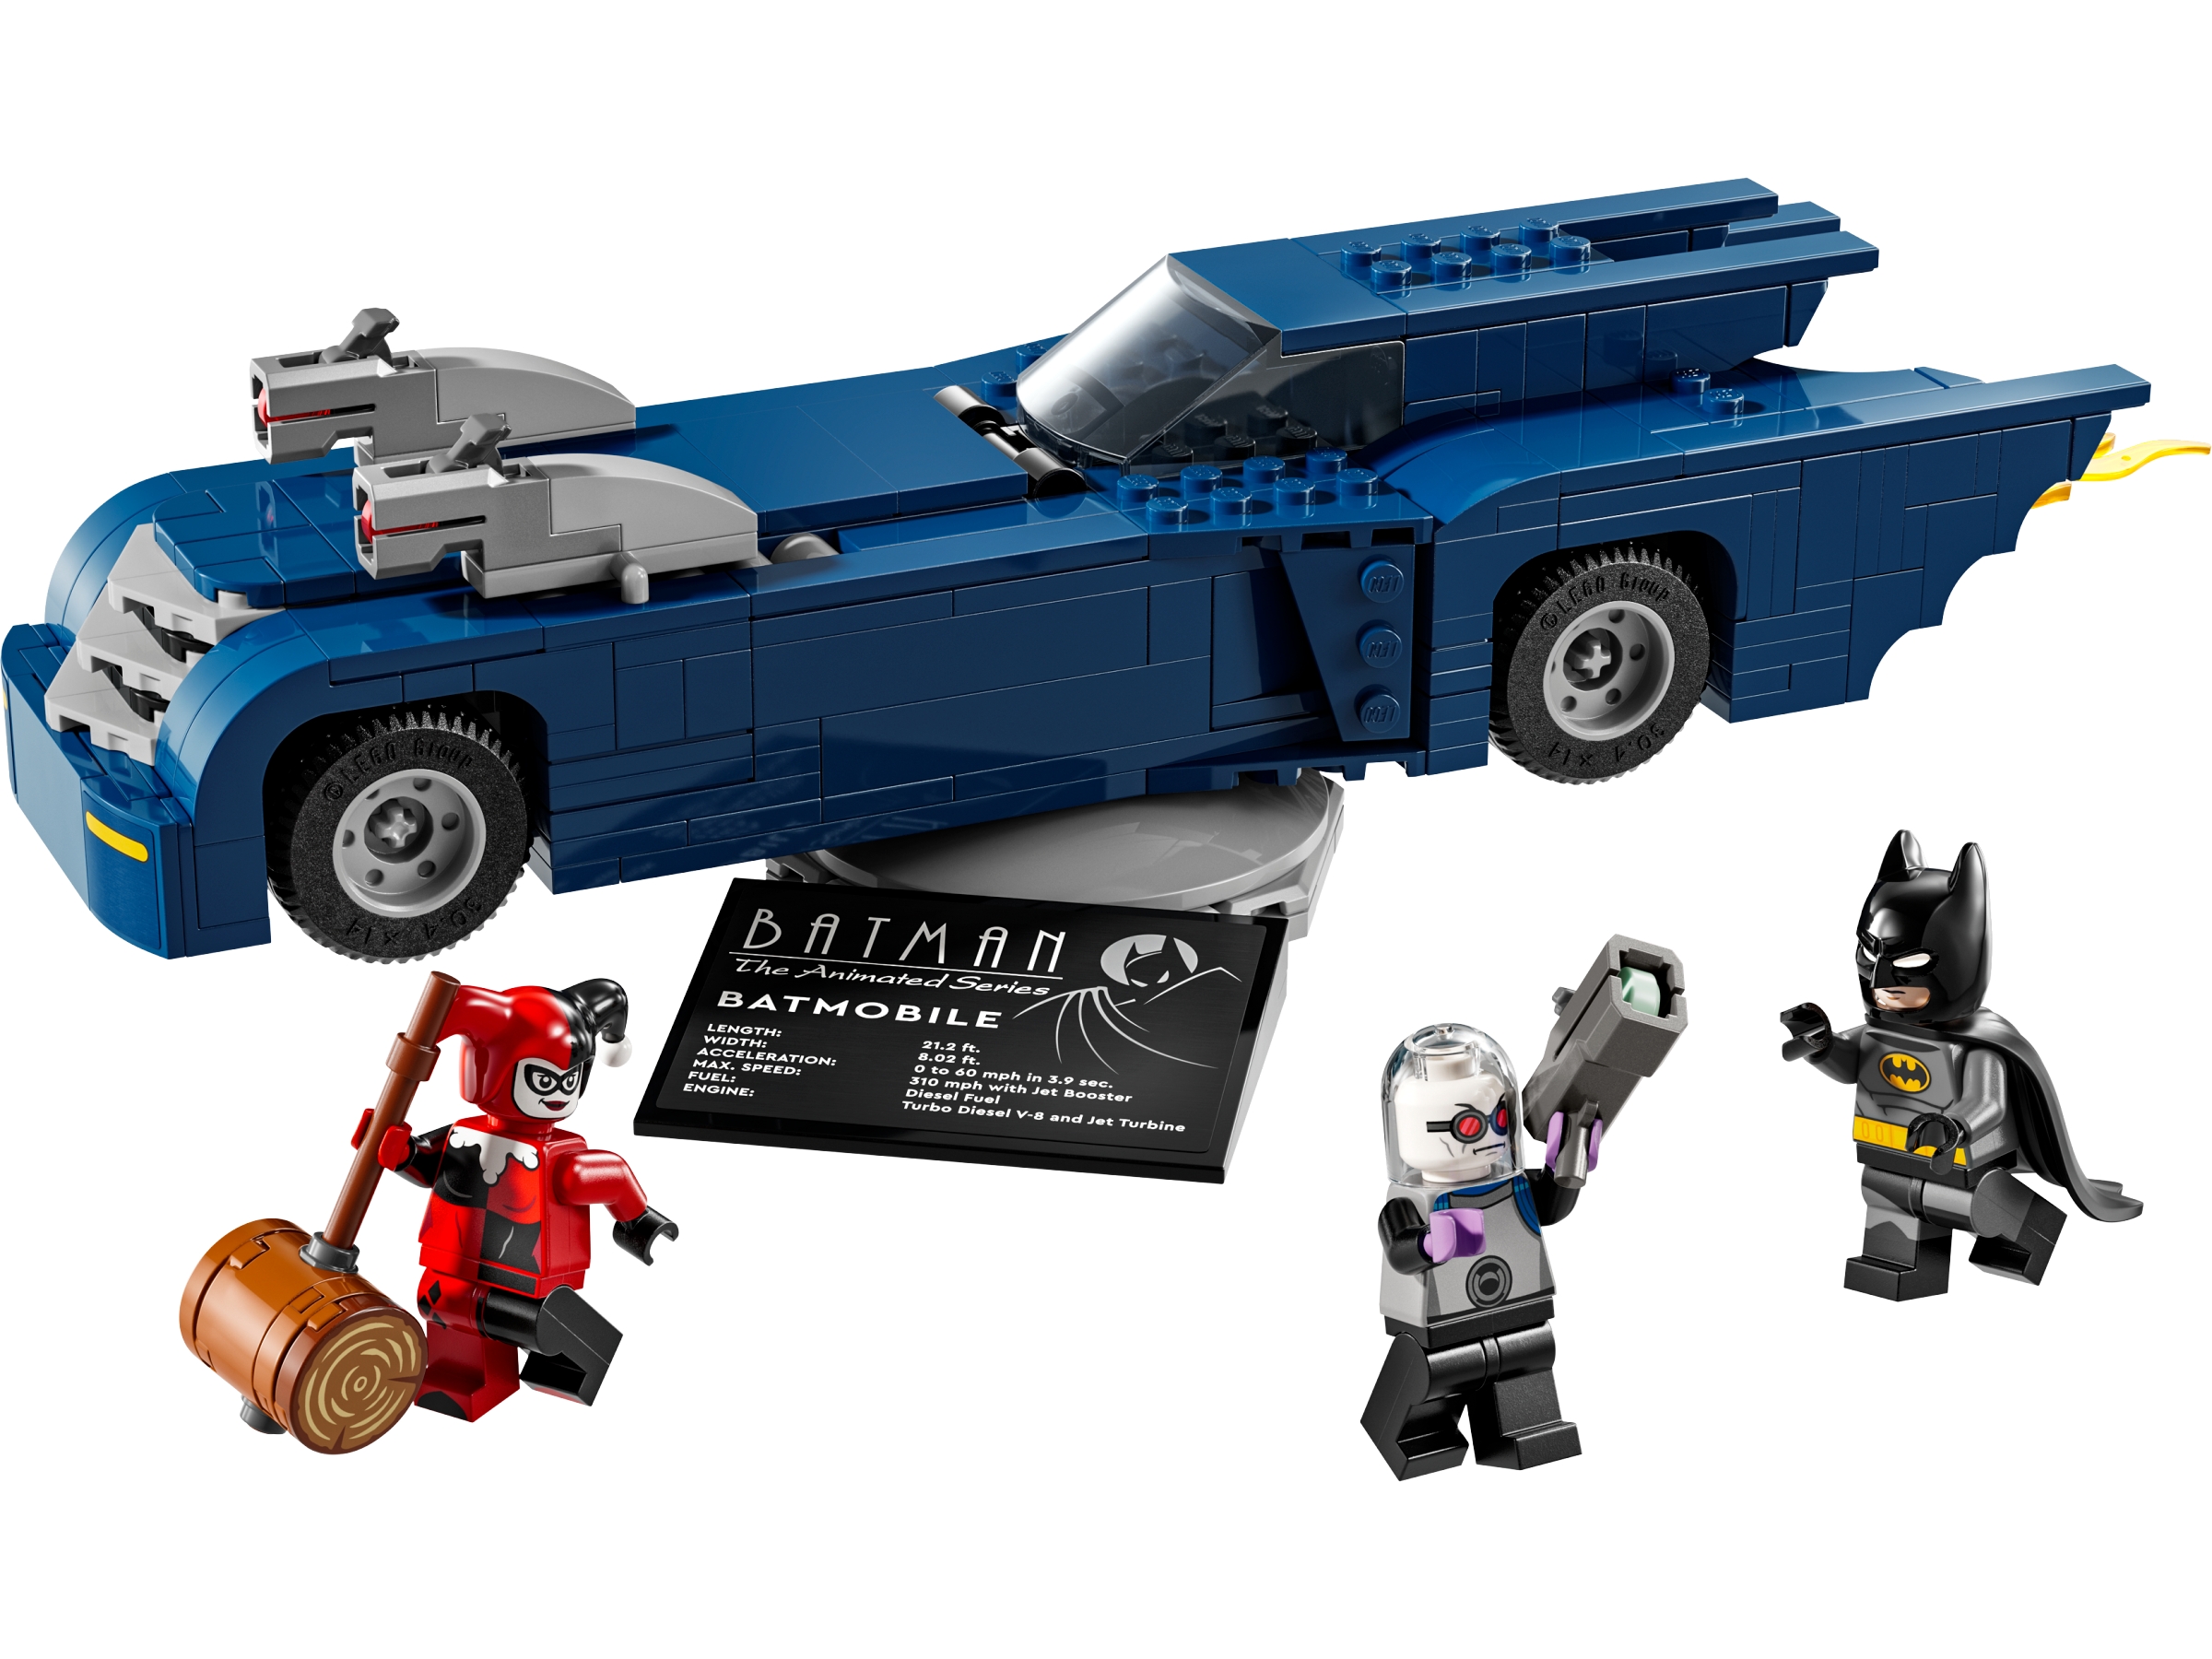 LEGO DC Comics 76274 Batman im Batmobil vs. Harley Quinn und Mr. Freeze